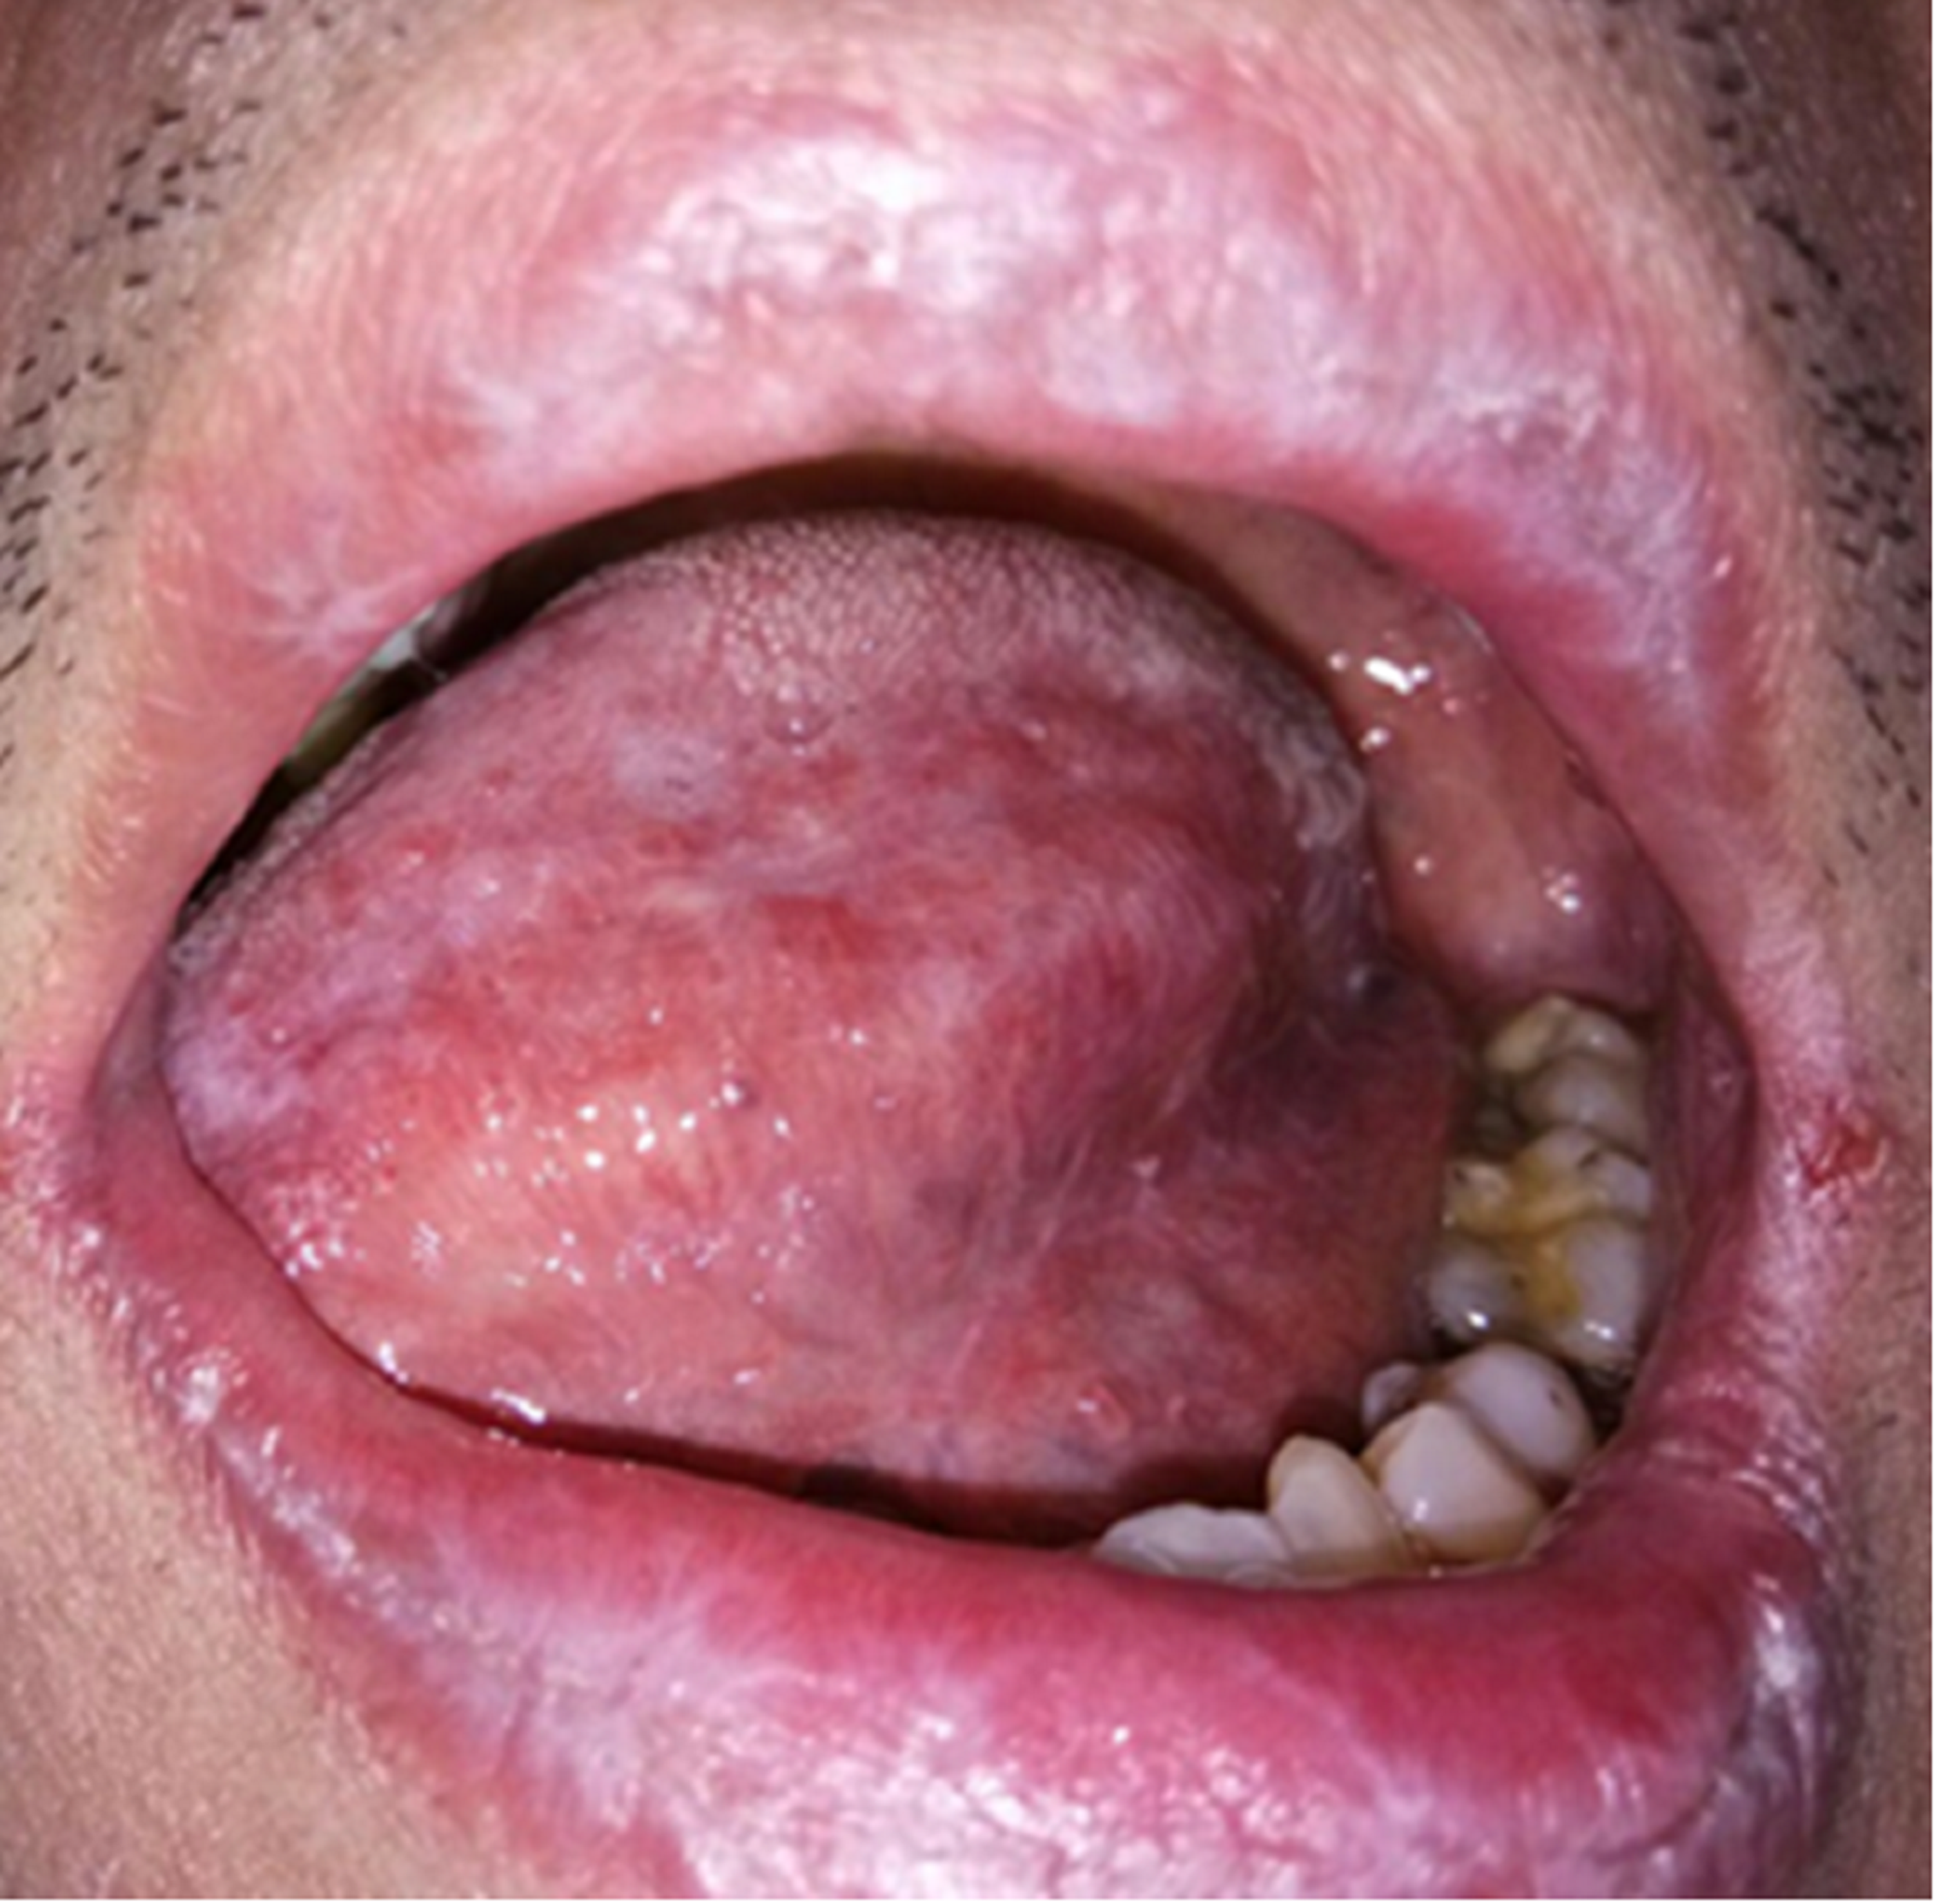 lichen planus mouth lesions